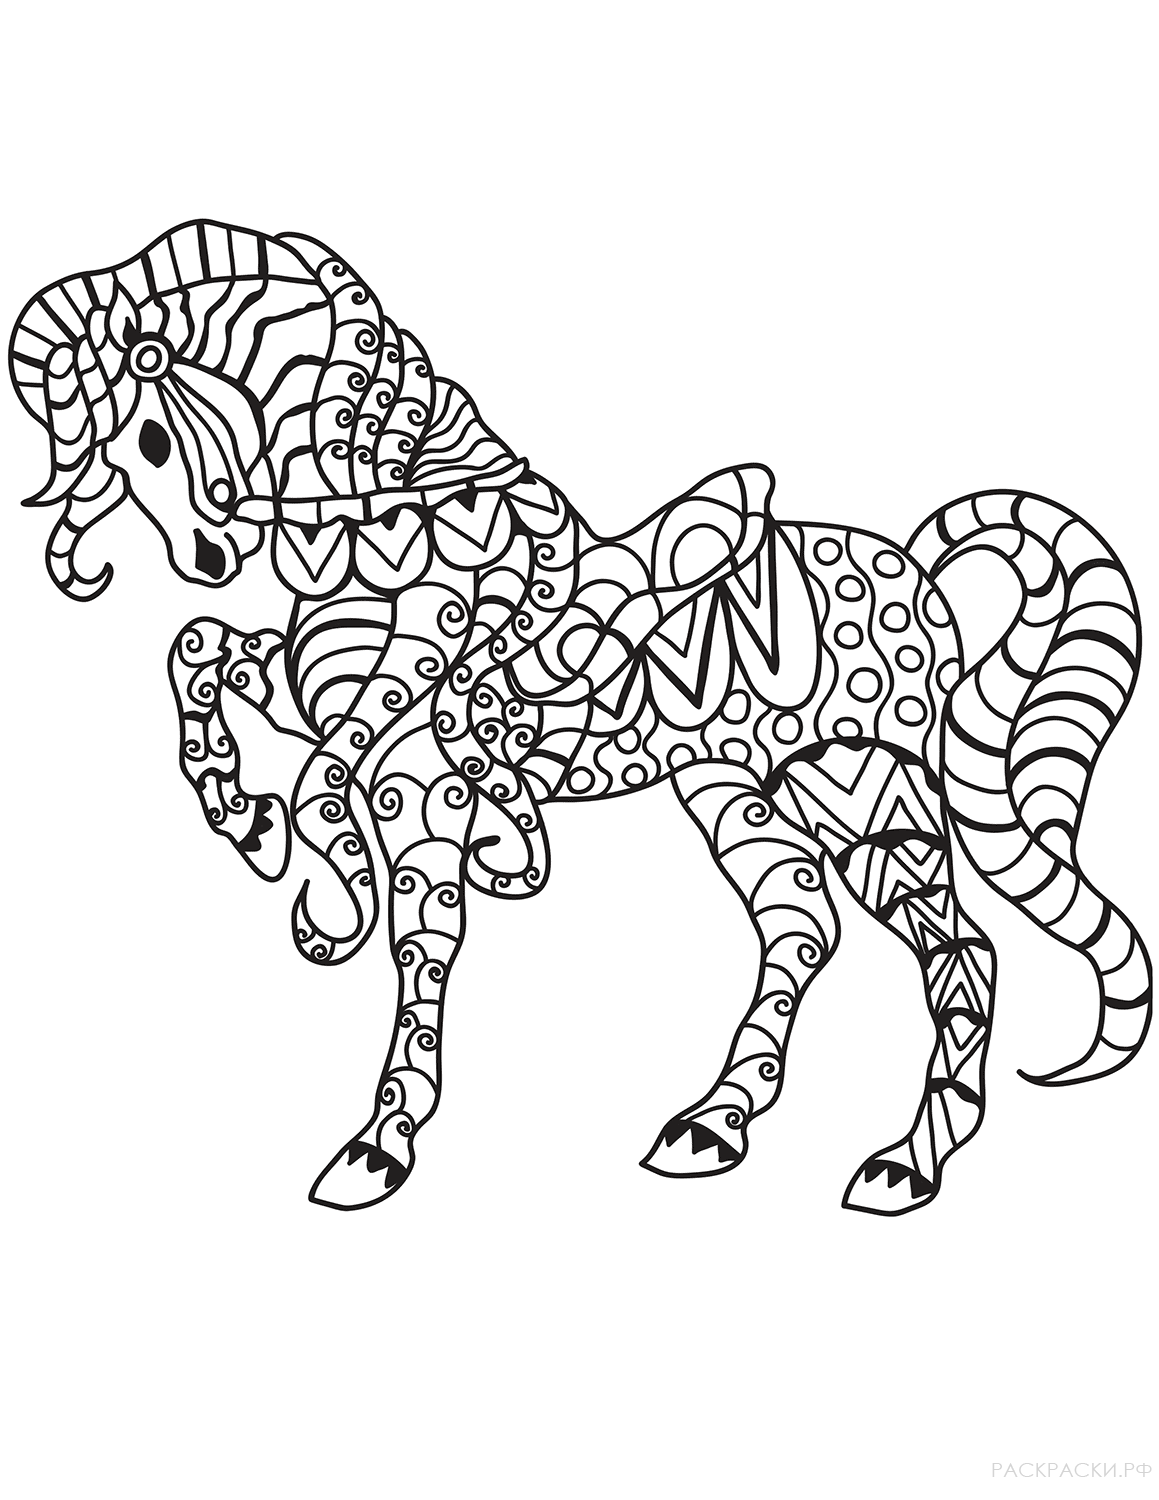 Раскраска Лошадь в технике дзентангл 7